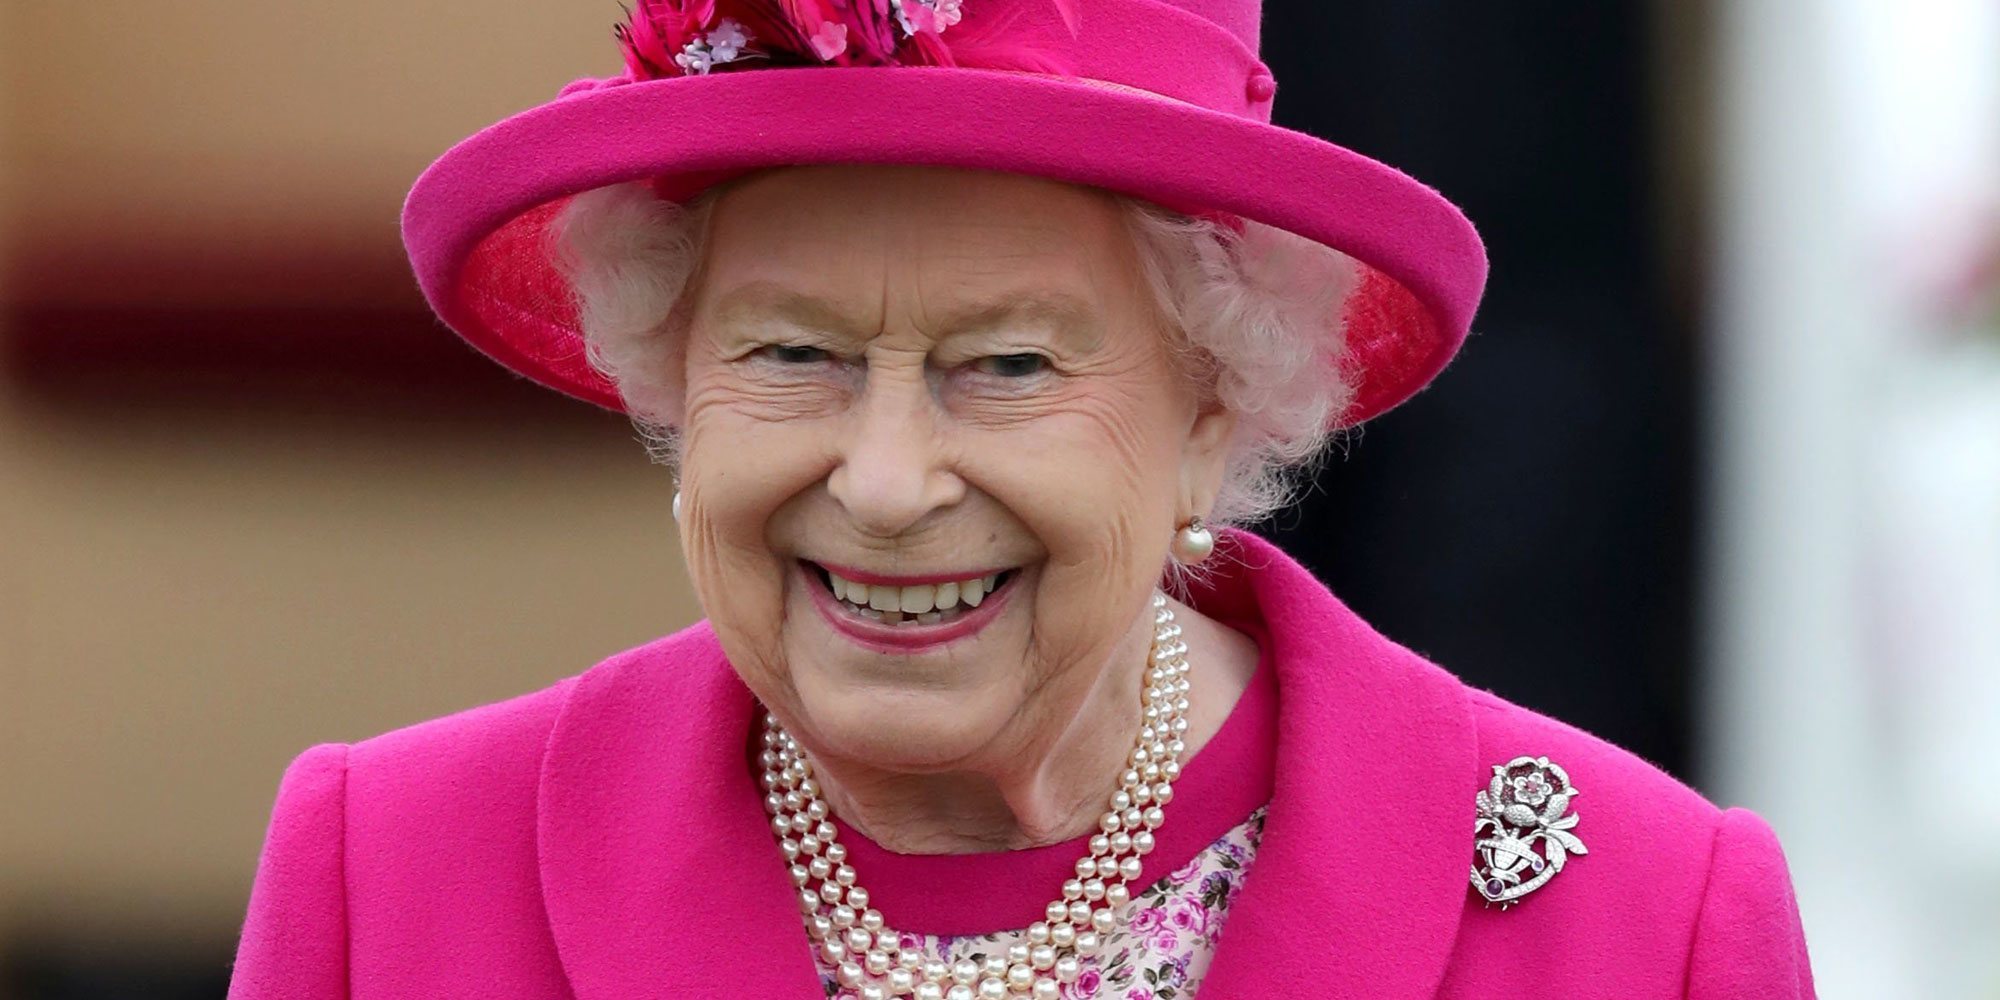 Primeros detalles sobre el Jubileo de Platino de la Reina Isabel: cuatro días festivos y celebraciones espectaculares